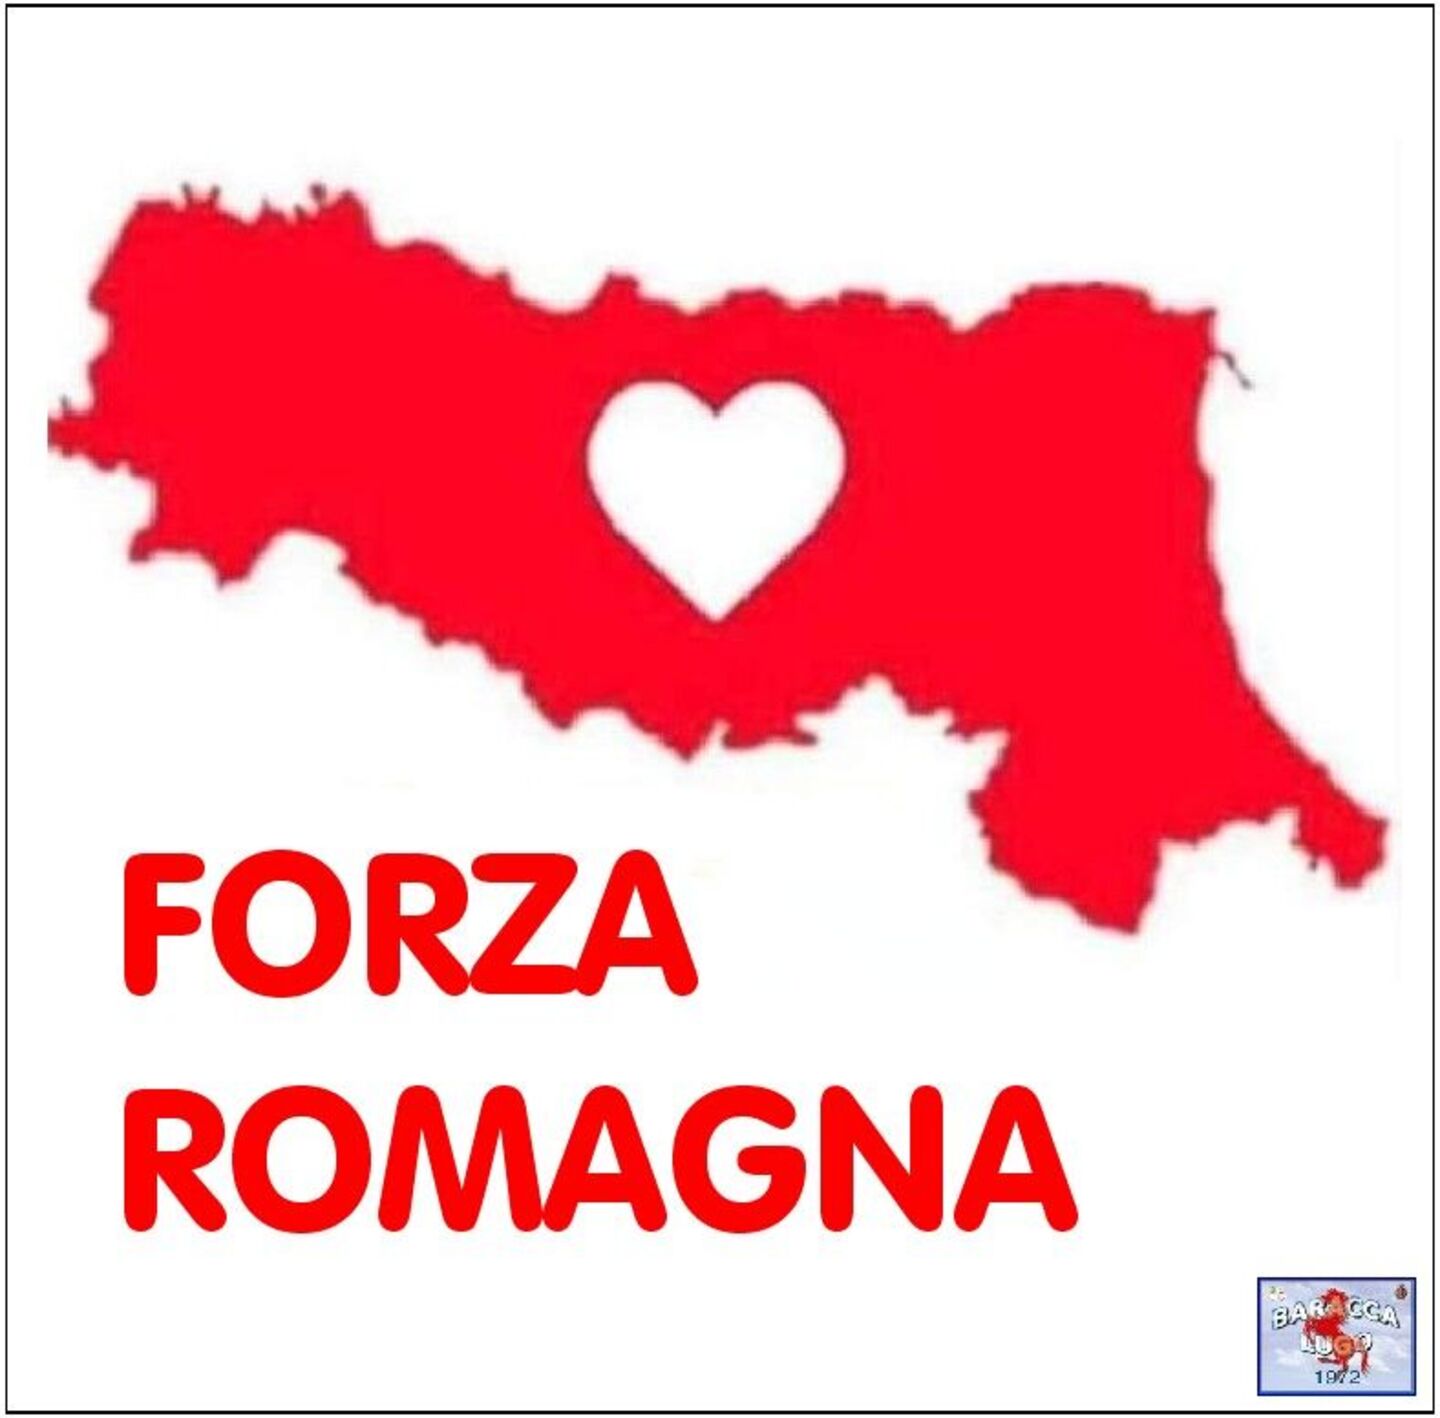 Forza Romagna